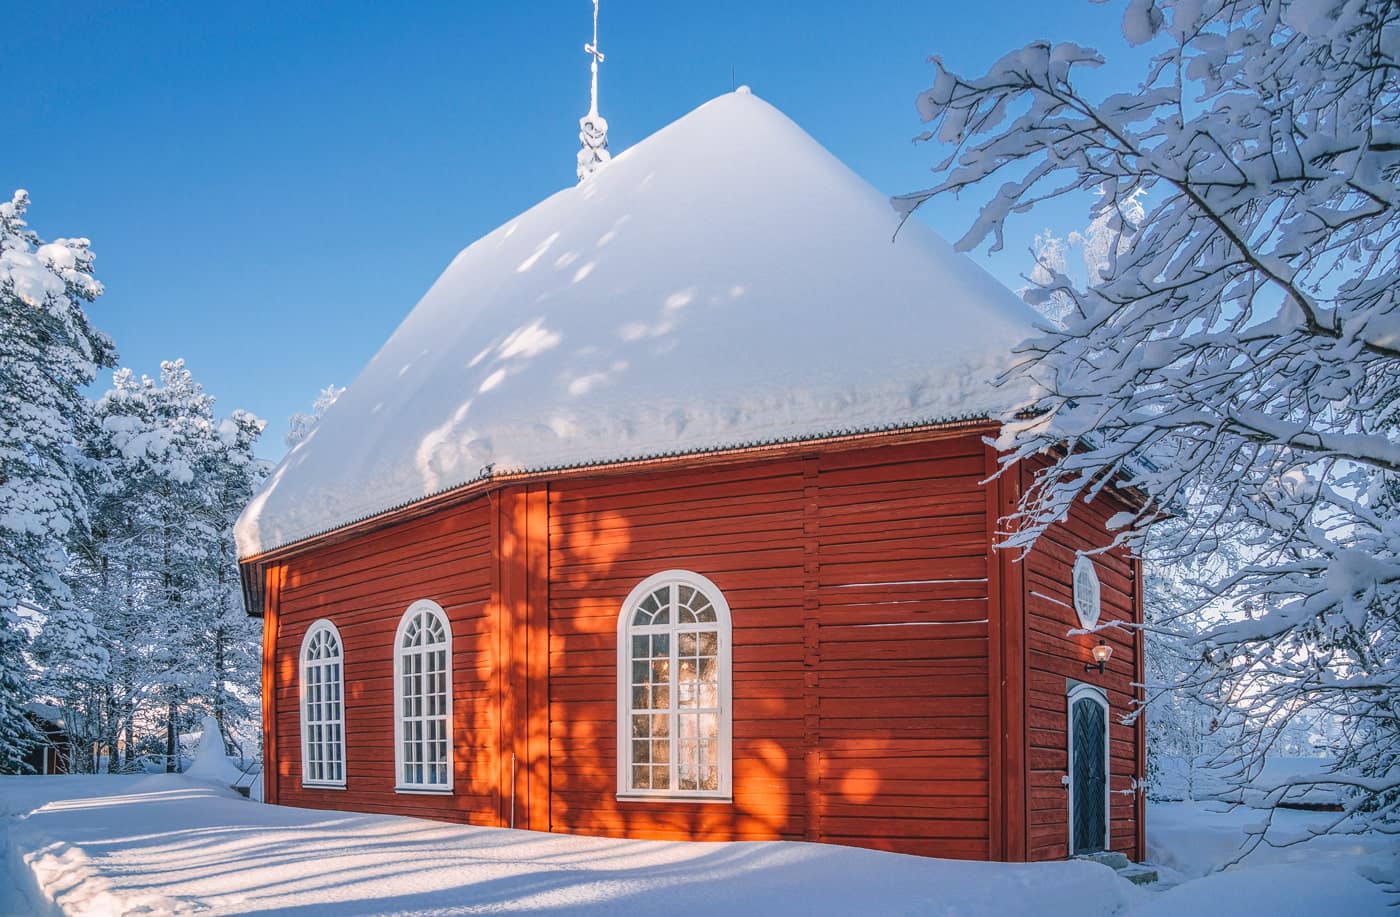 Sami church in Jokkmokk, Lapland